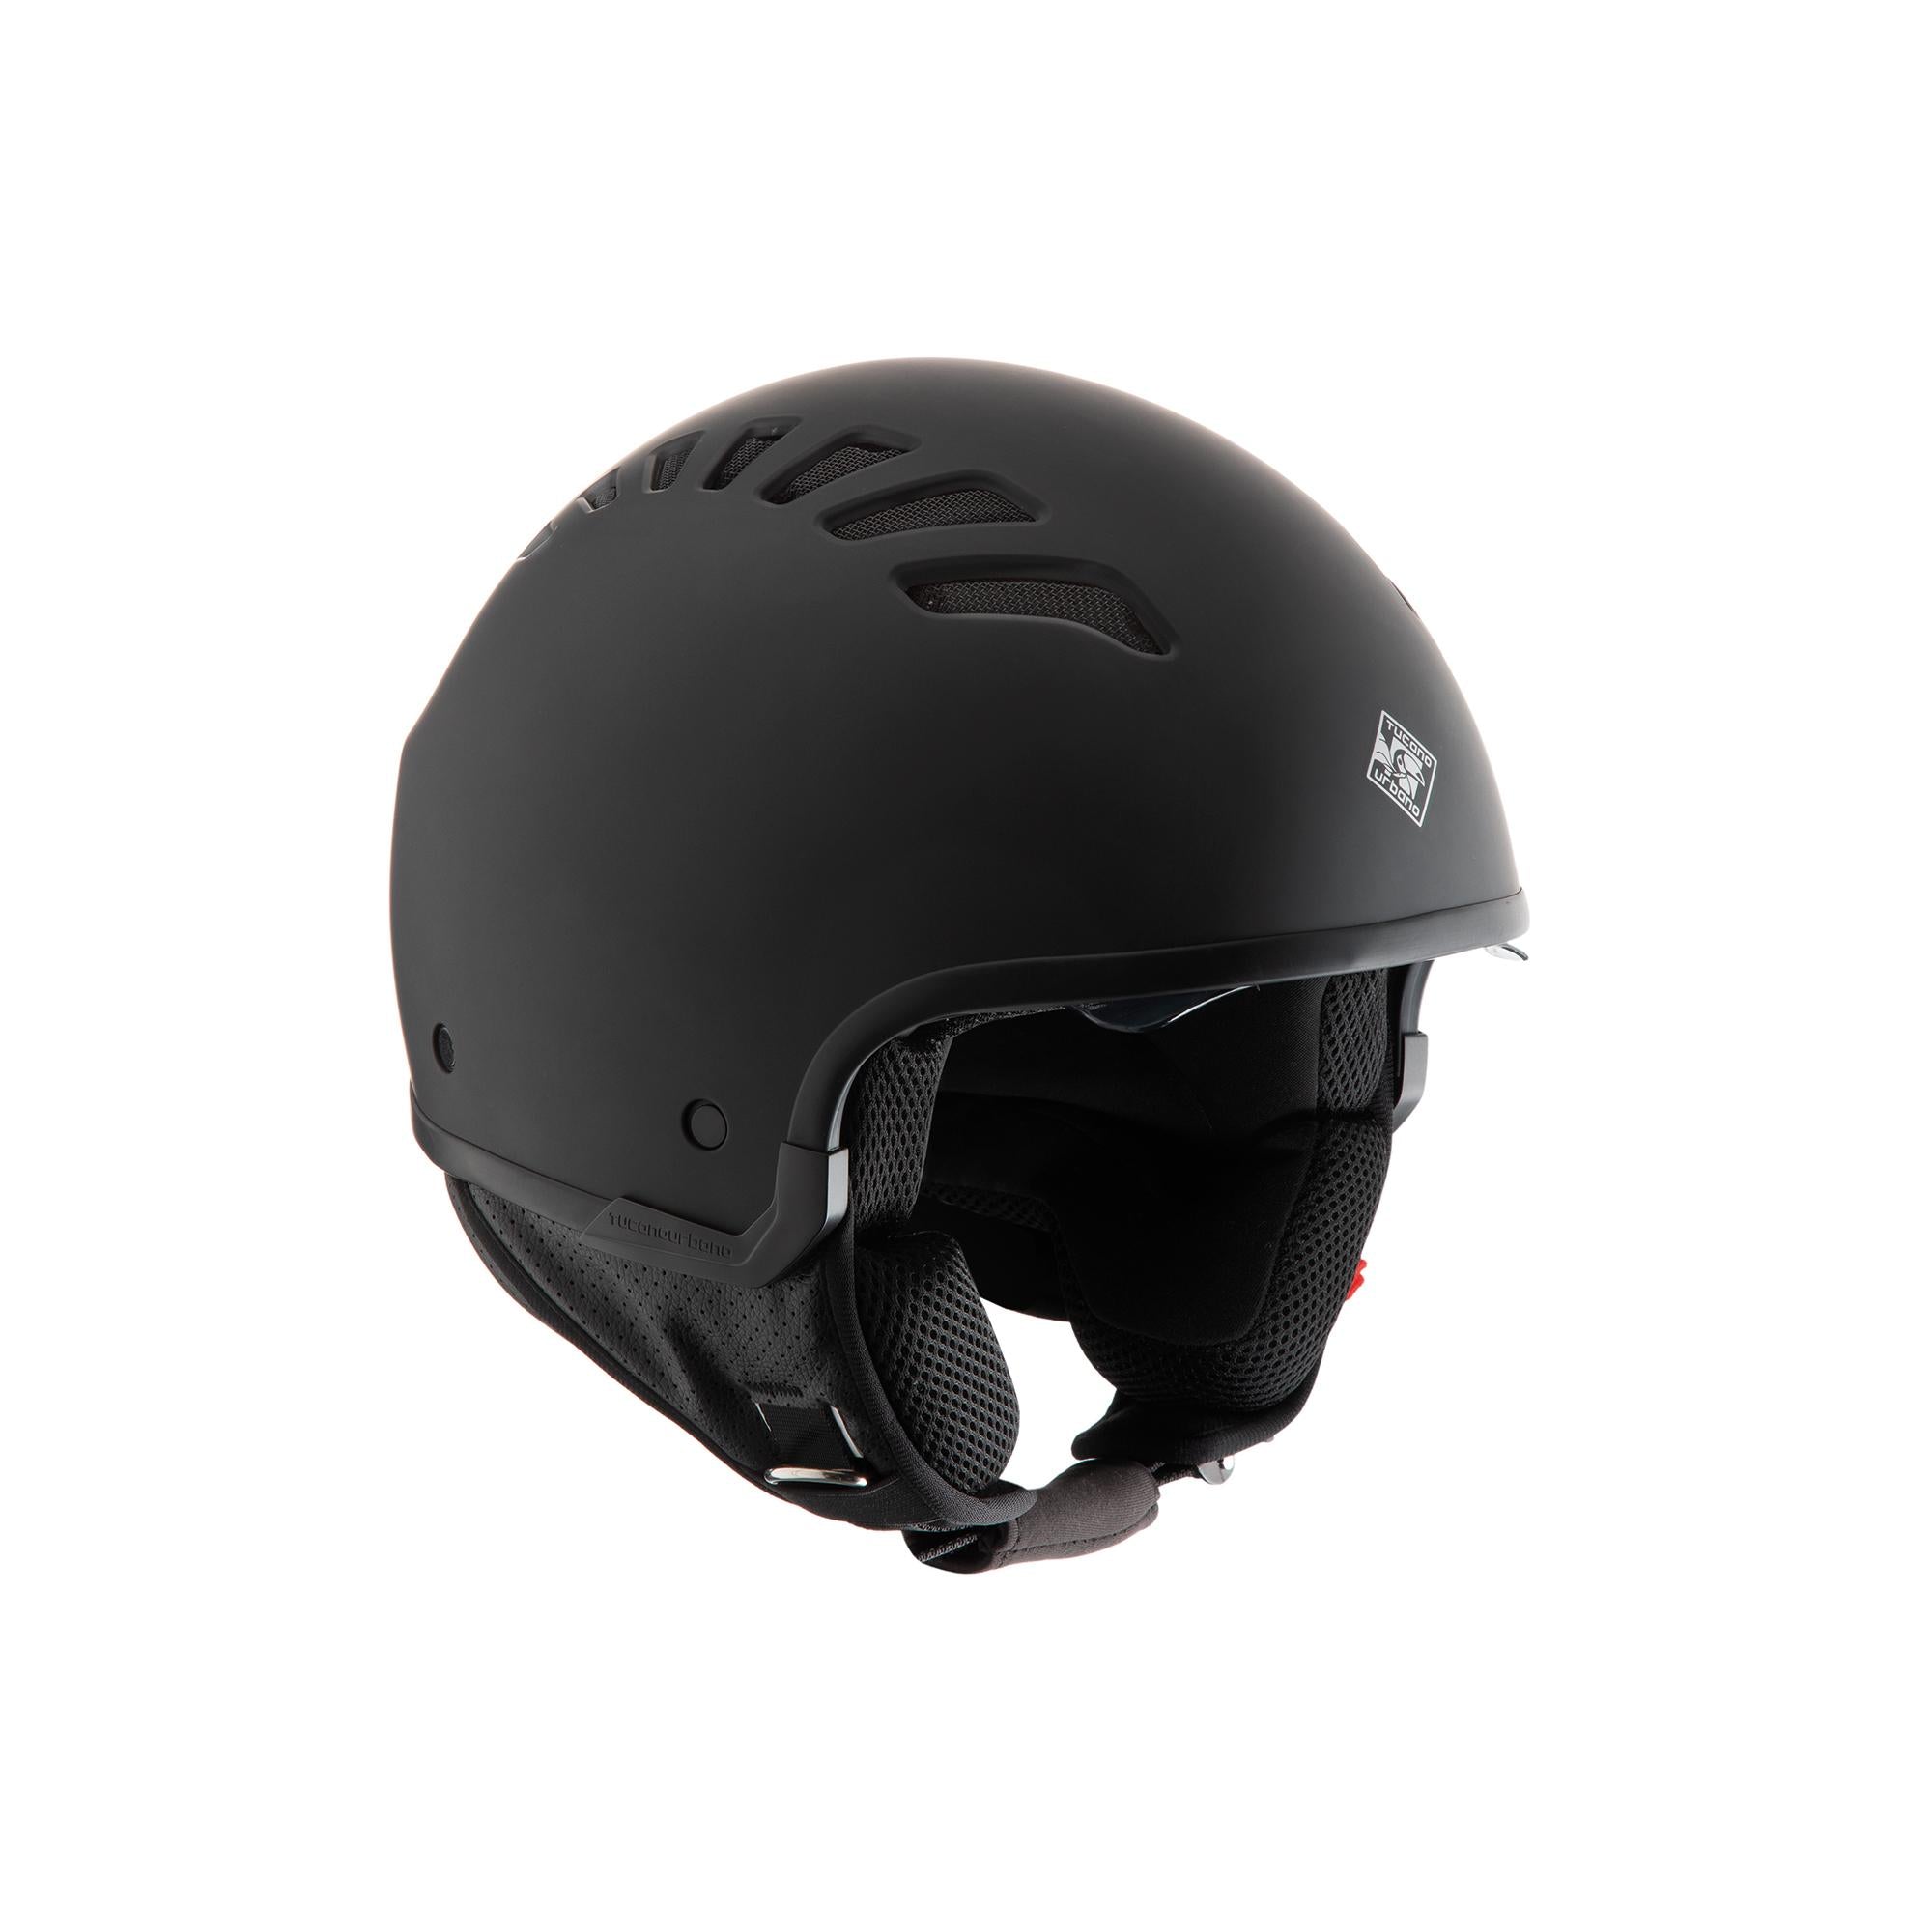 TUCANO URBANO EL'FLESH matt carbon gray helmet